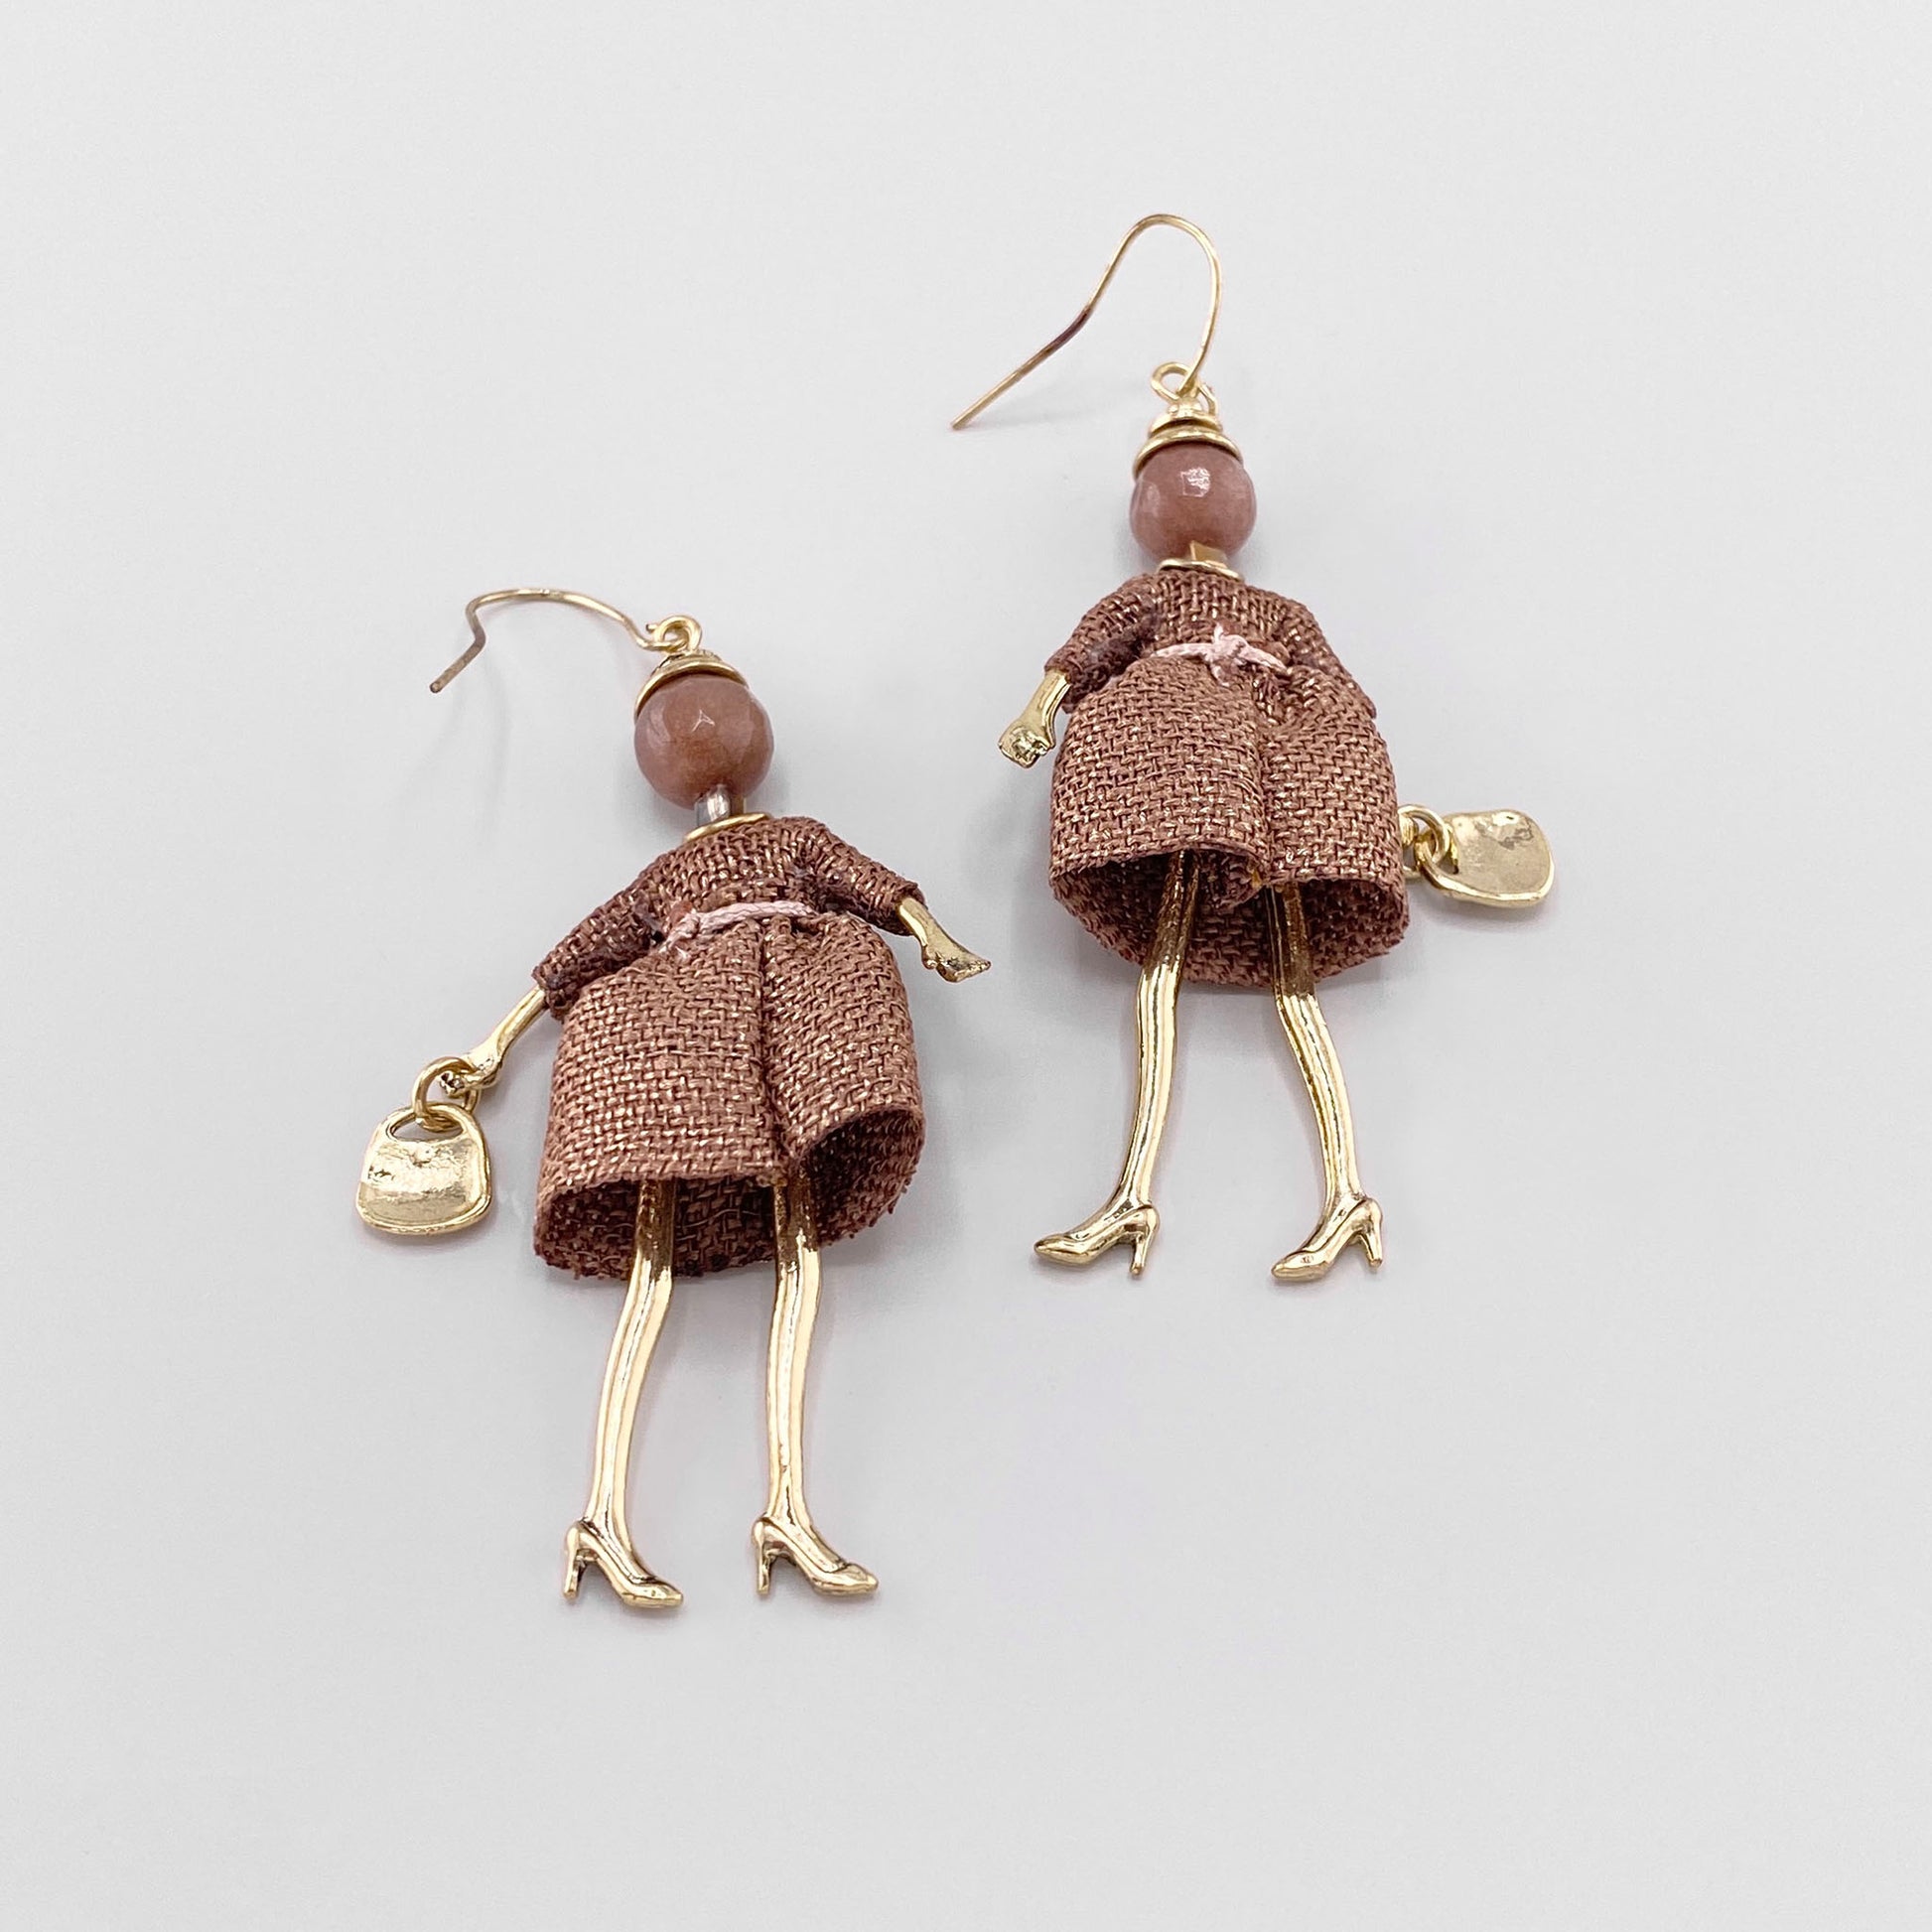 Doll earrings